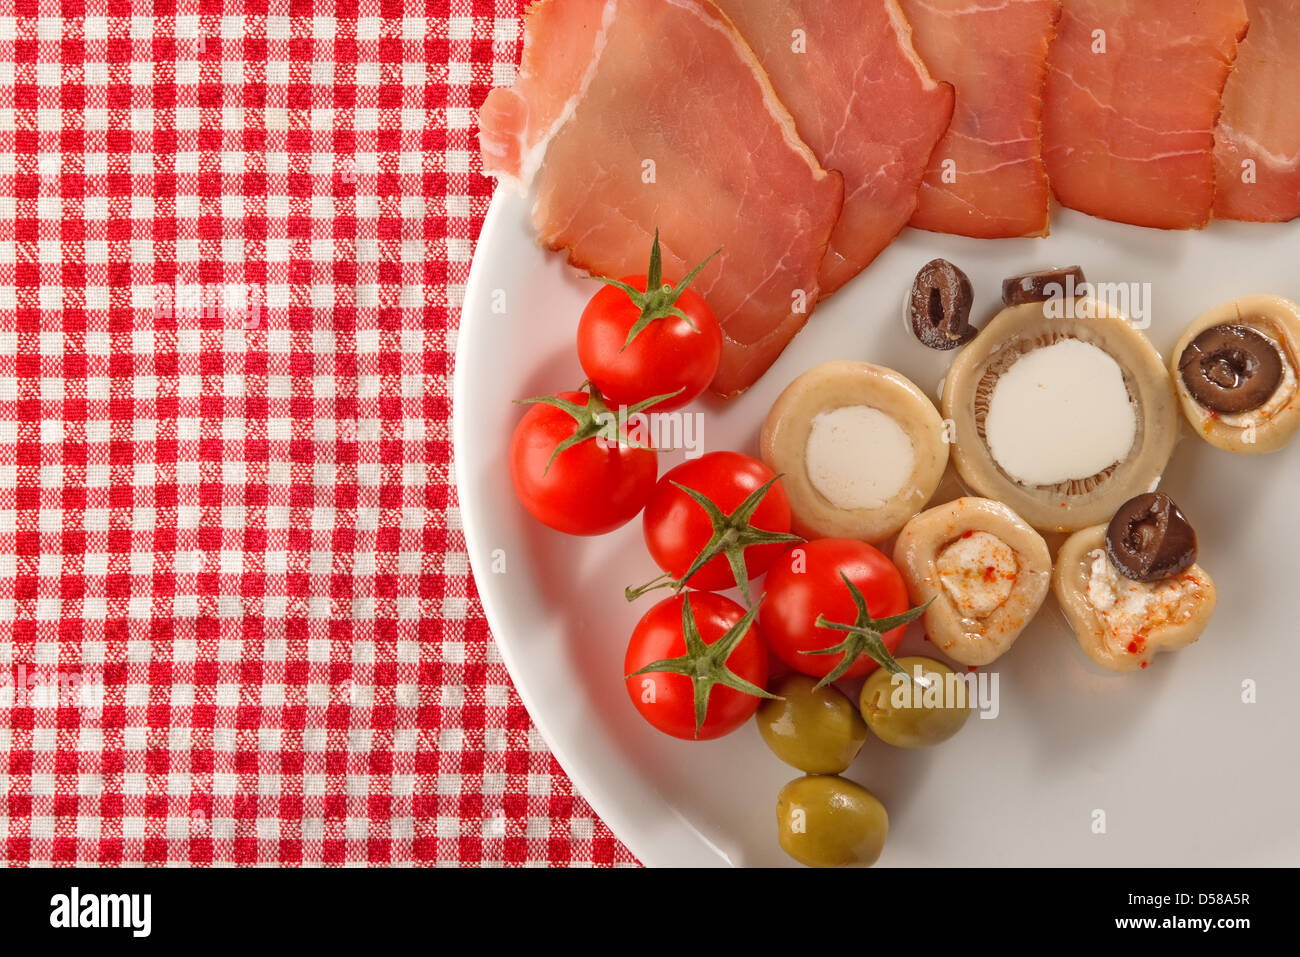 Entrée froide, une assiette d'assortiment de charcuterie traditionnelle  dans les pays méditerranéens Photo Stock - Alamy